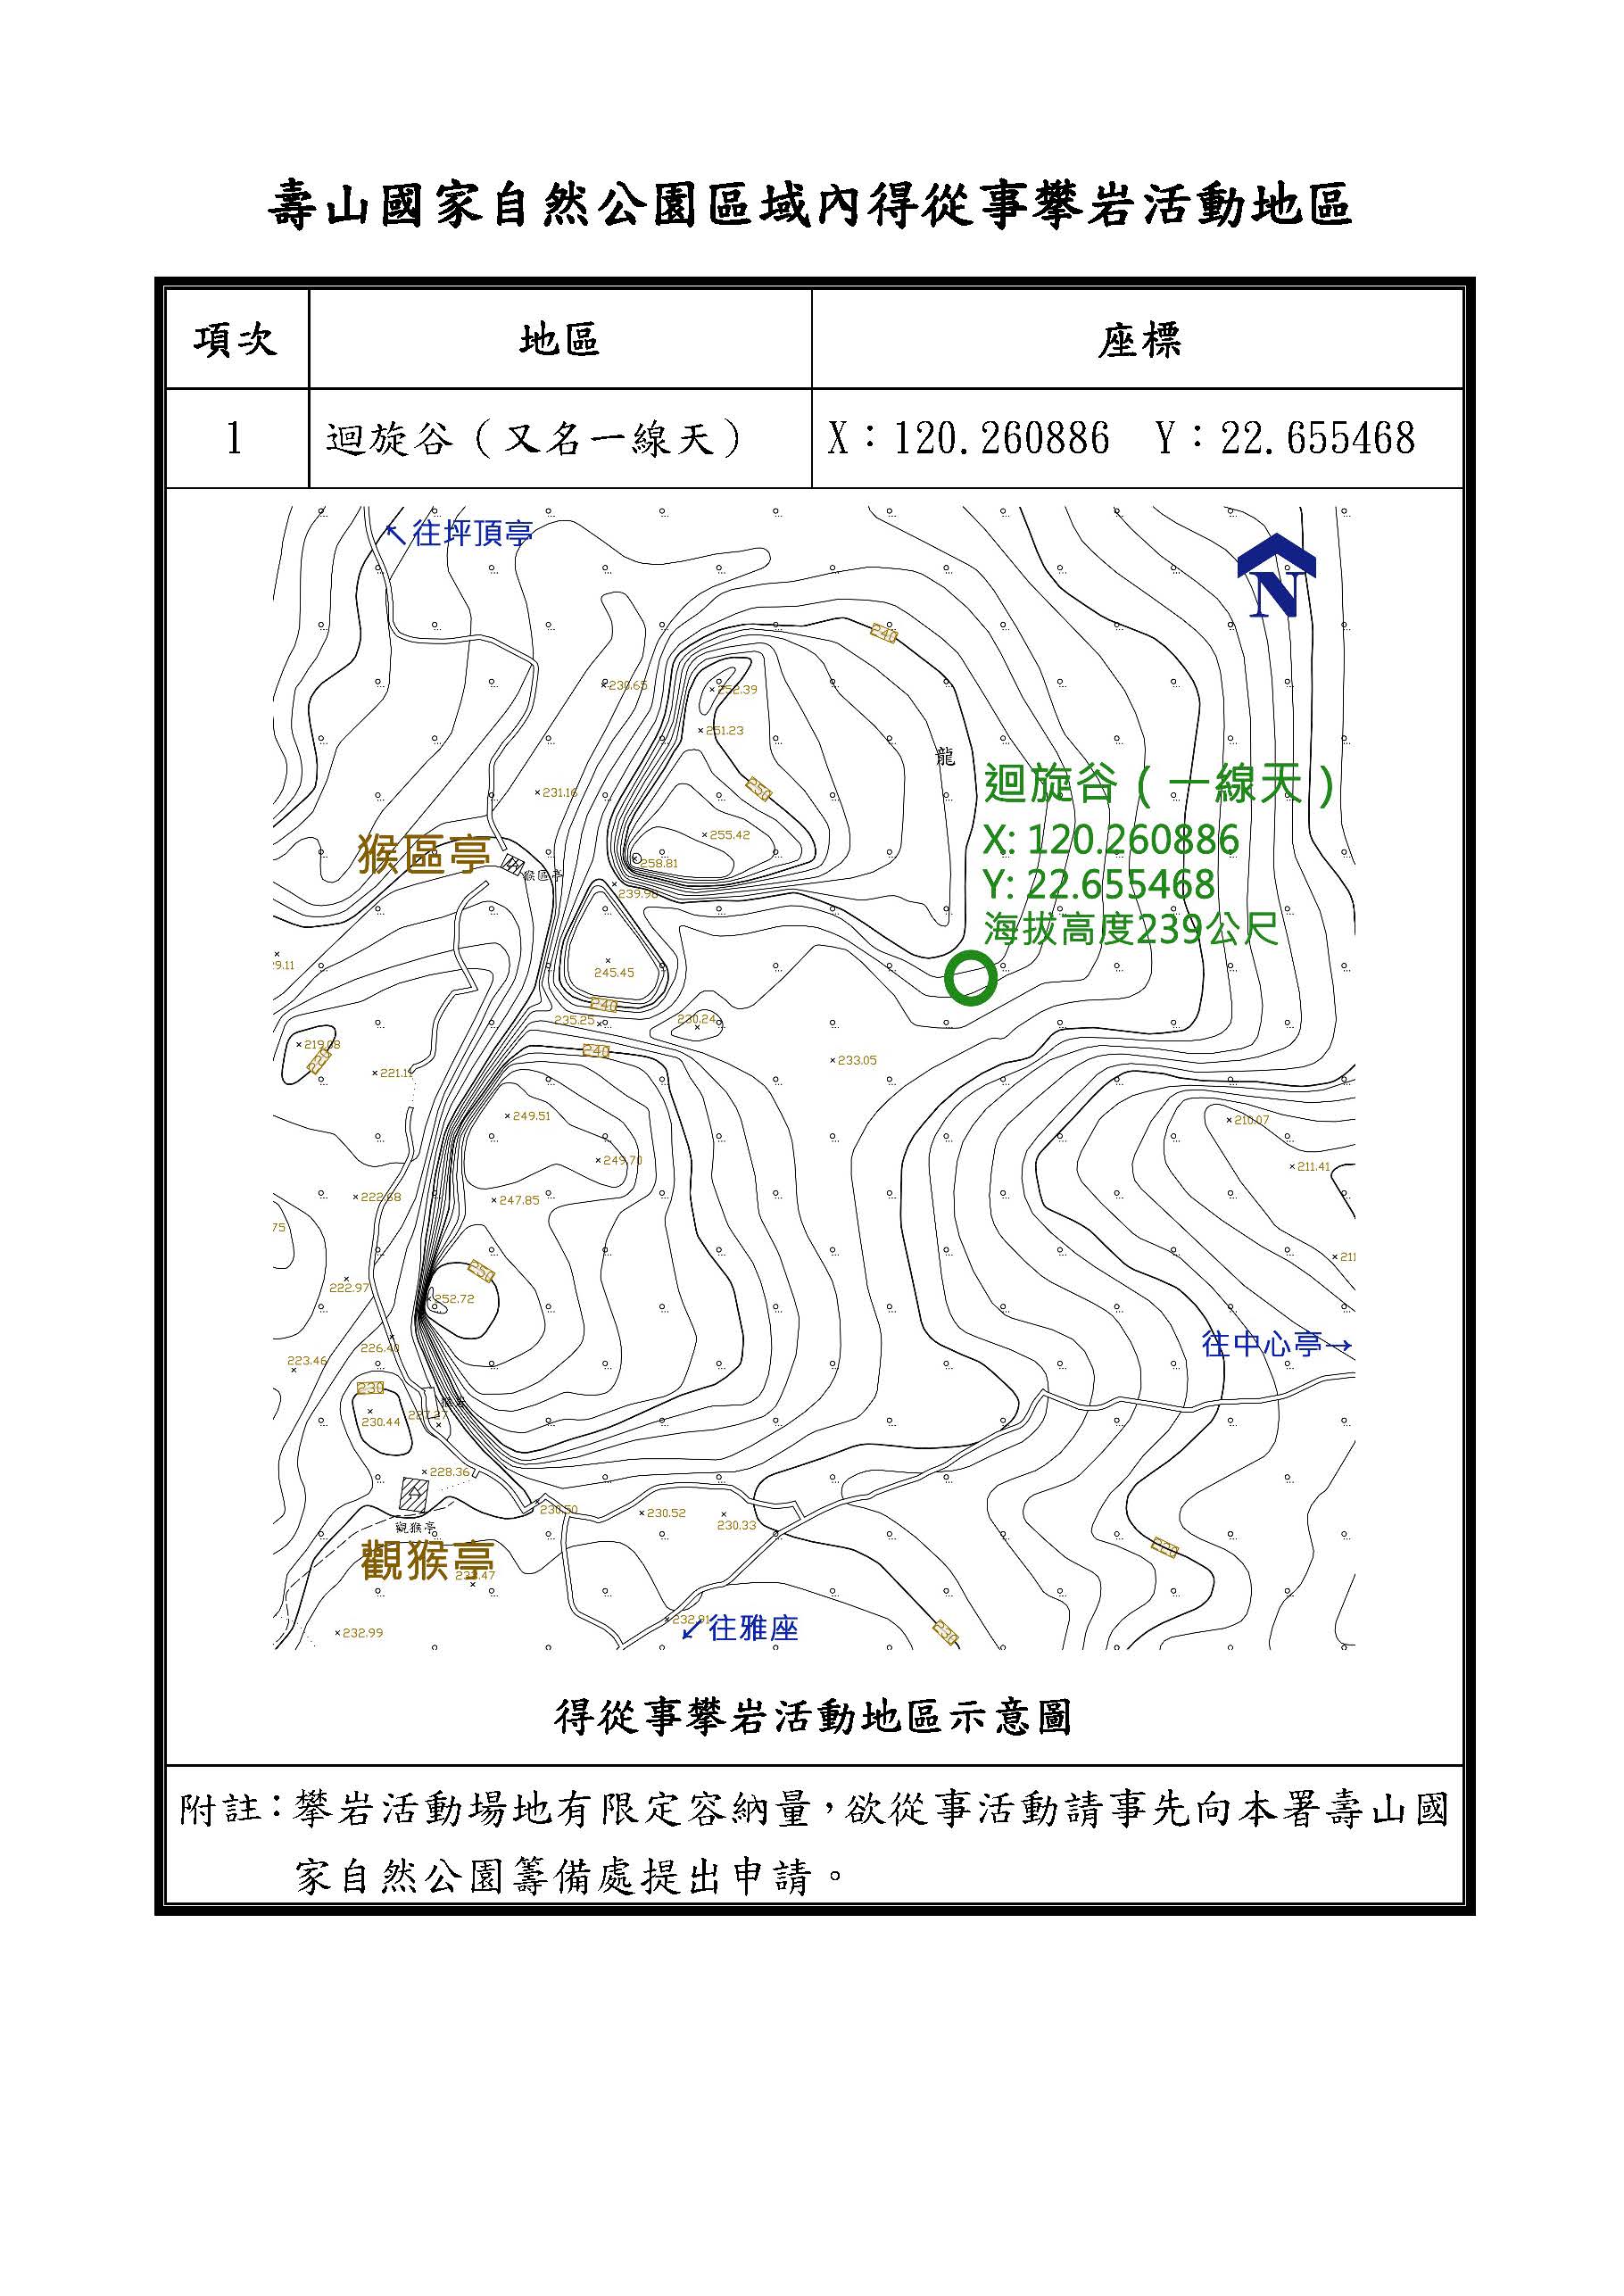 公告壽山國家自然公園區域內指定得騎乘自行車、申請從事探洞活動、從事攀岩活動等3項活動地區公文5